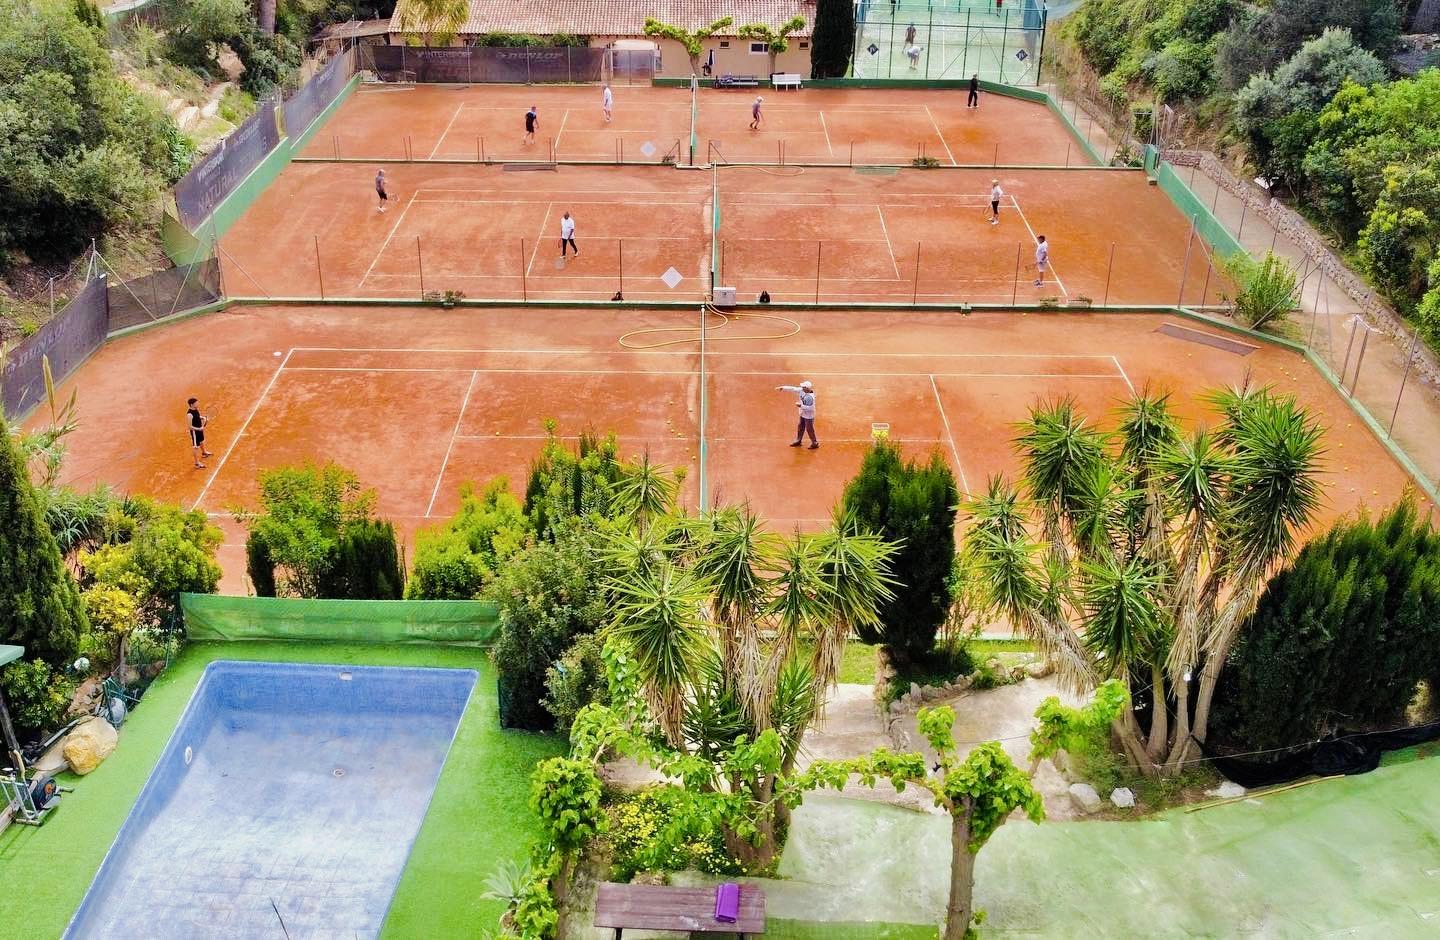 Buena Vista tennis 10